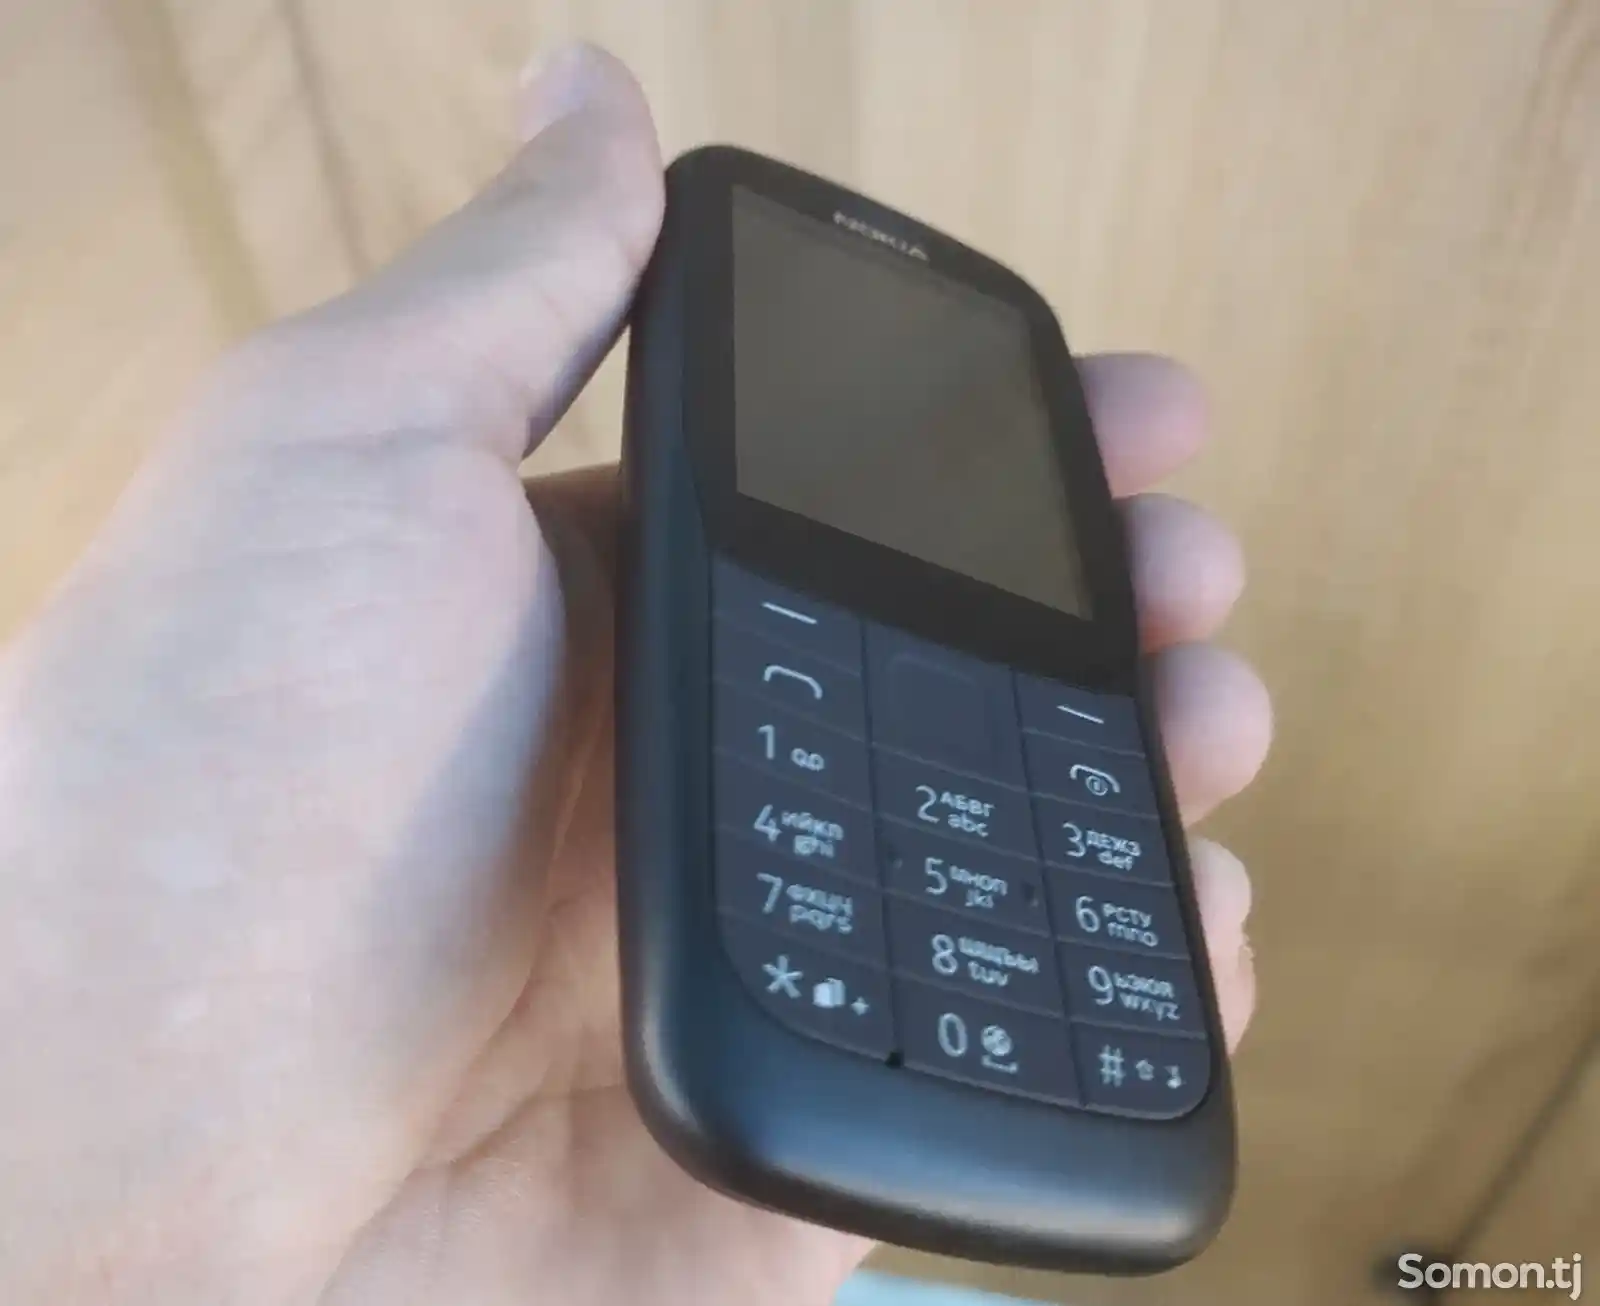 Nokia 220-5